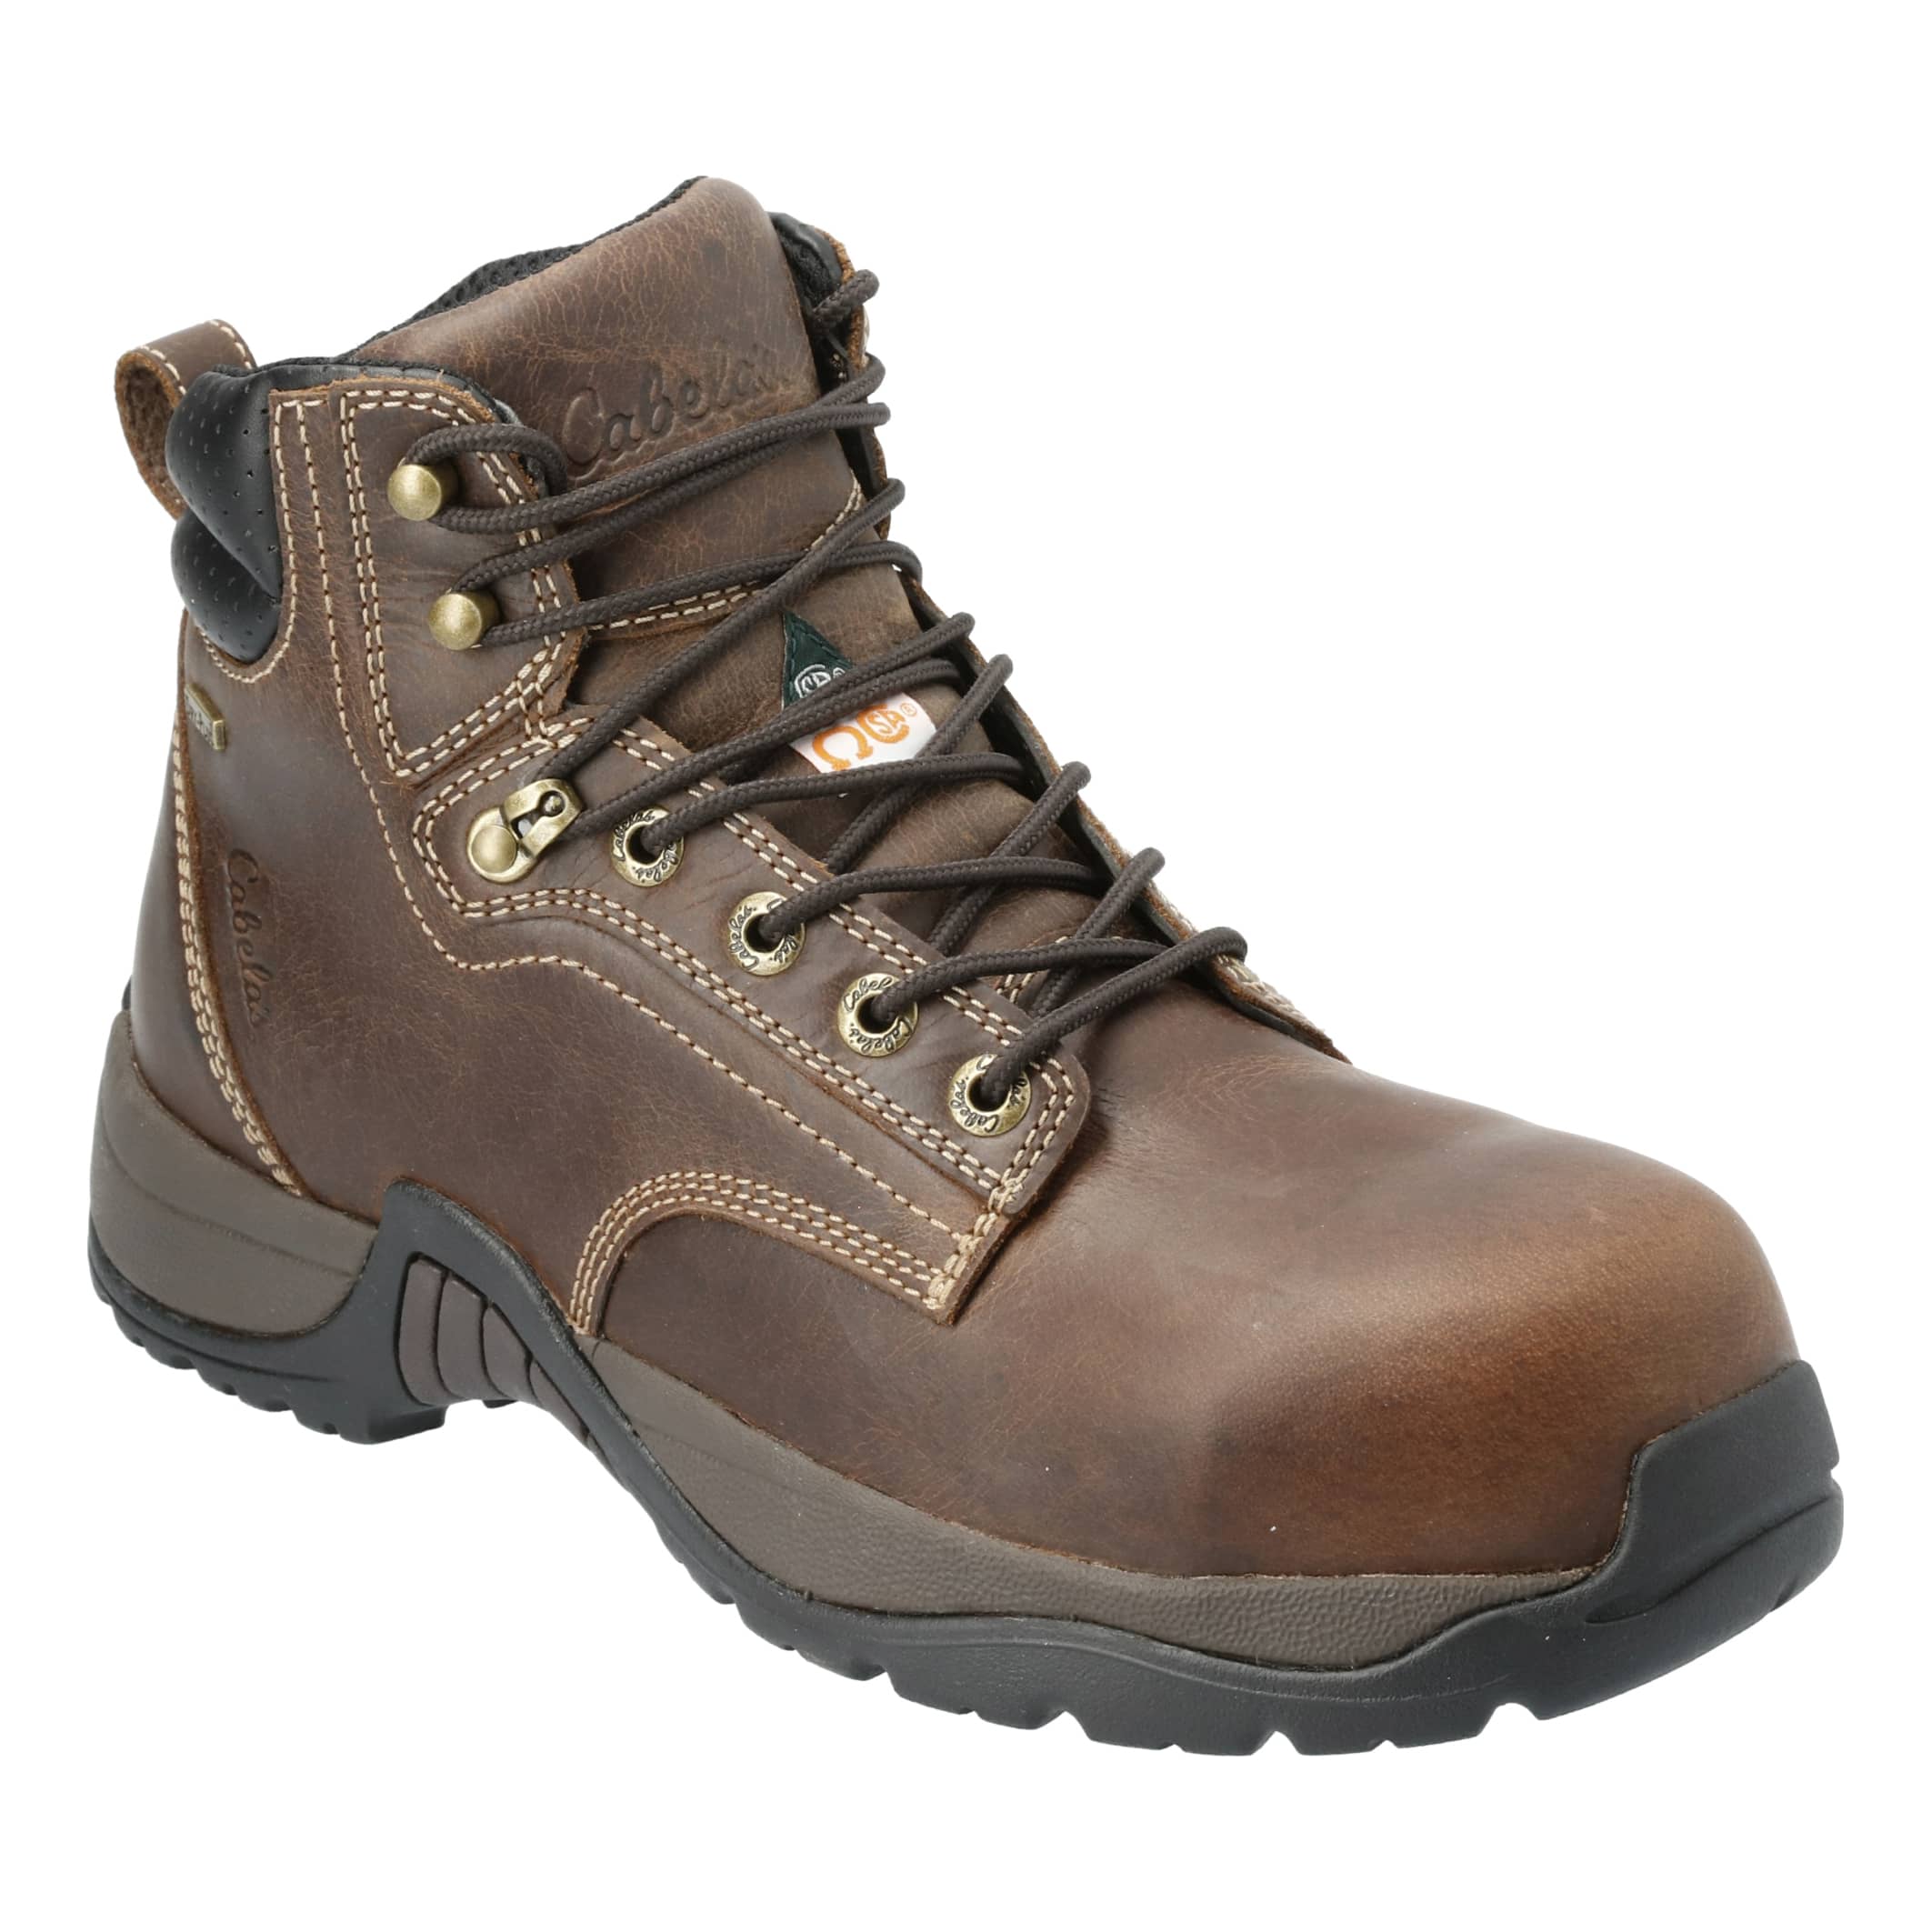 Cabela’s Men’s Roughneck™ Ledger CSA Waterproof Composite Toe Work Boots